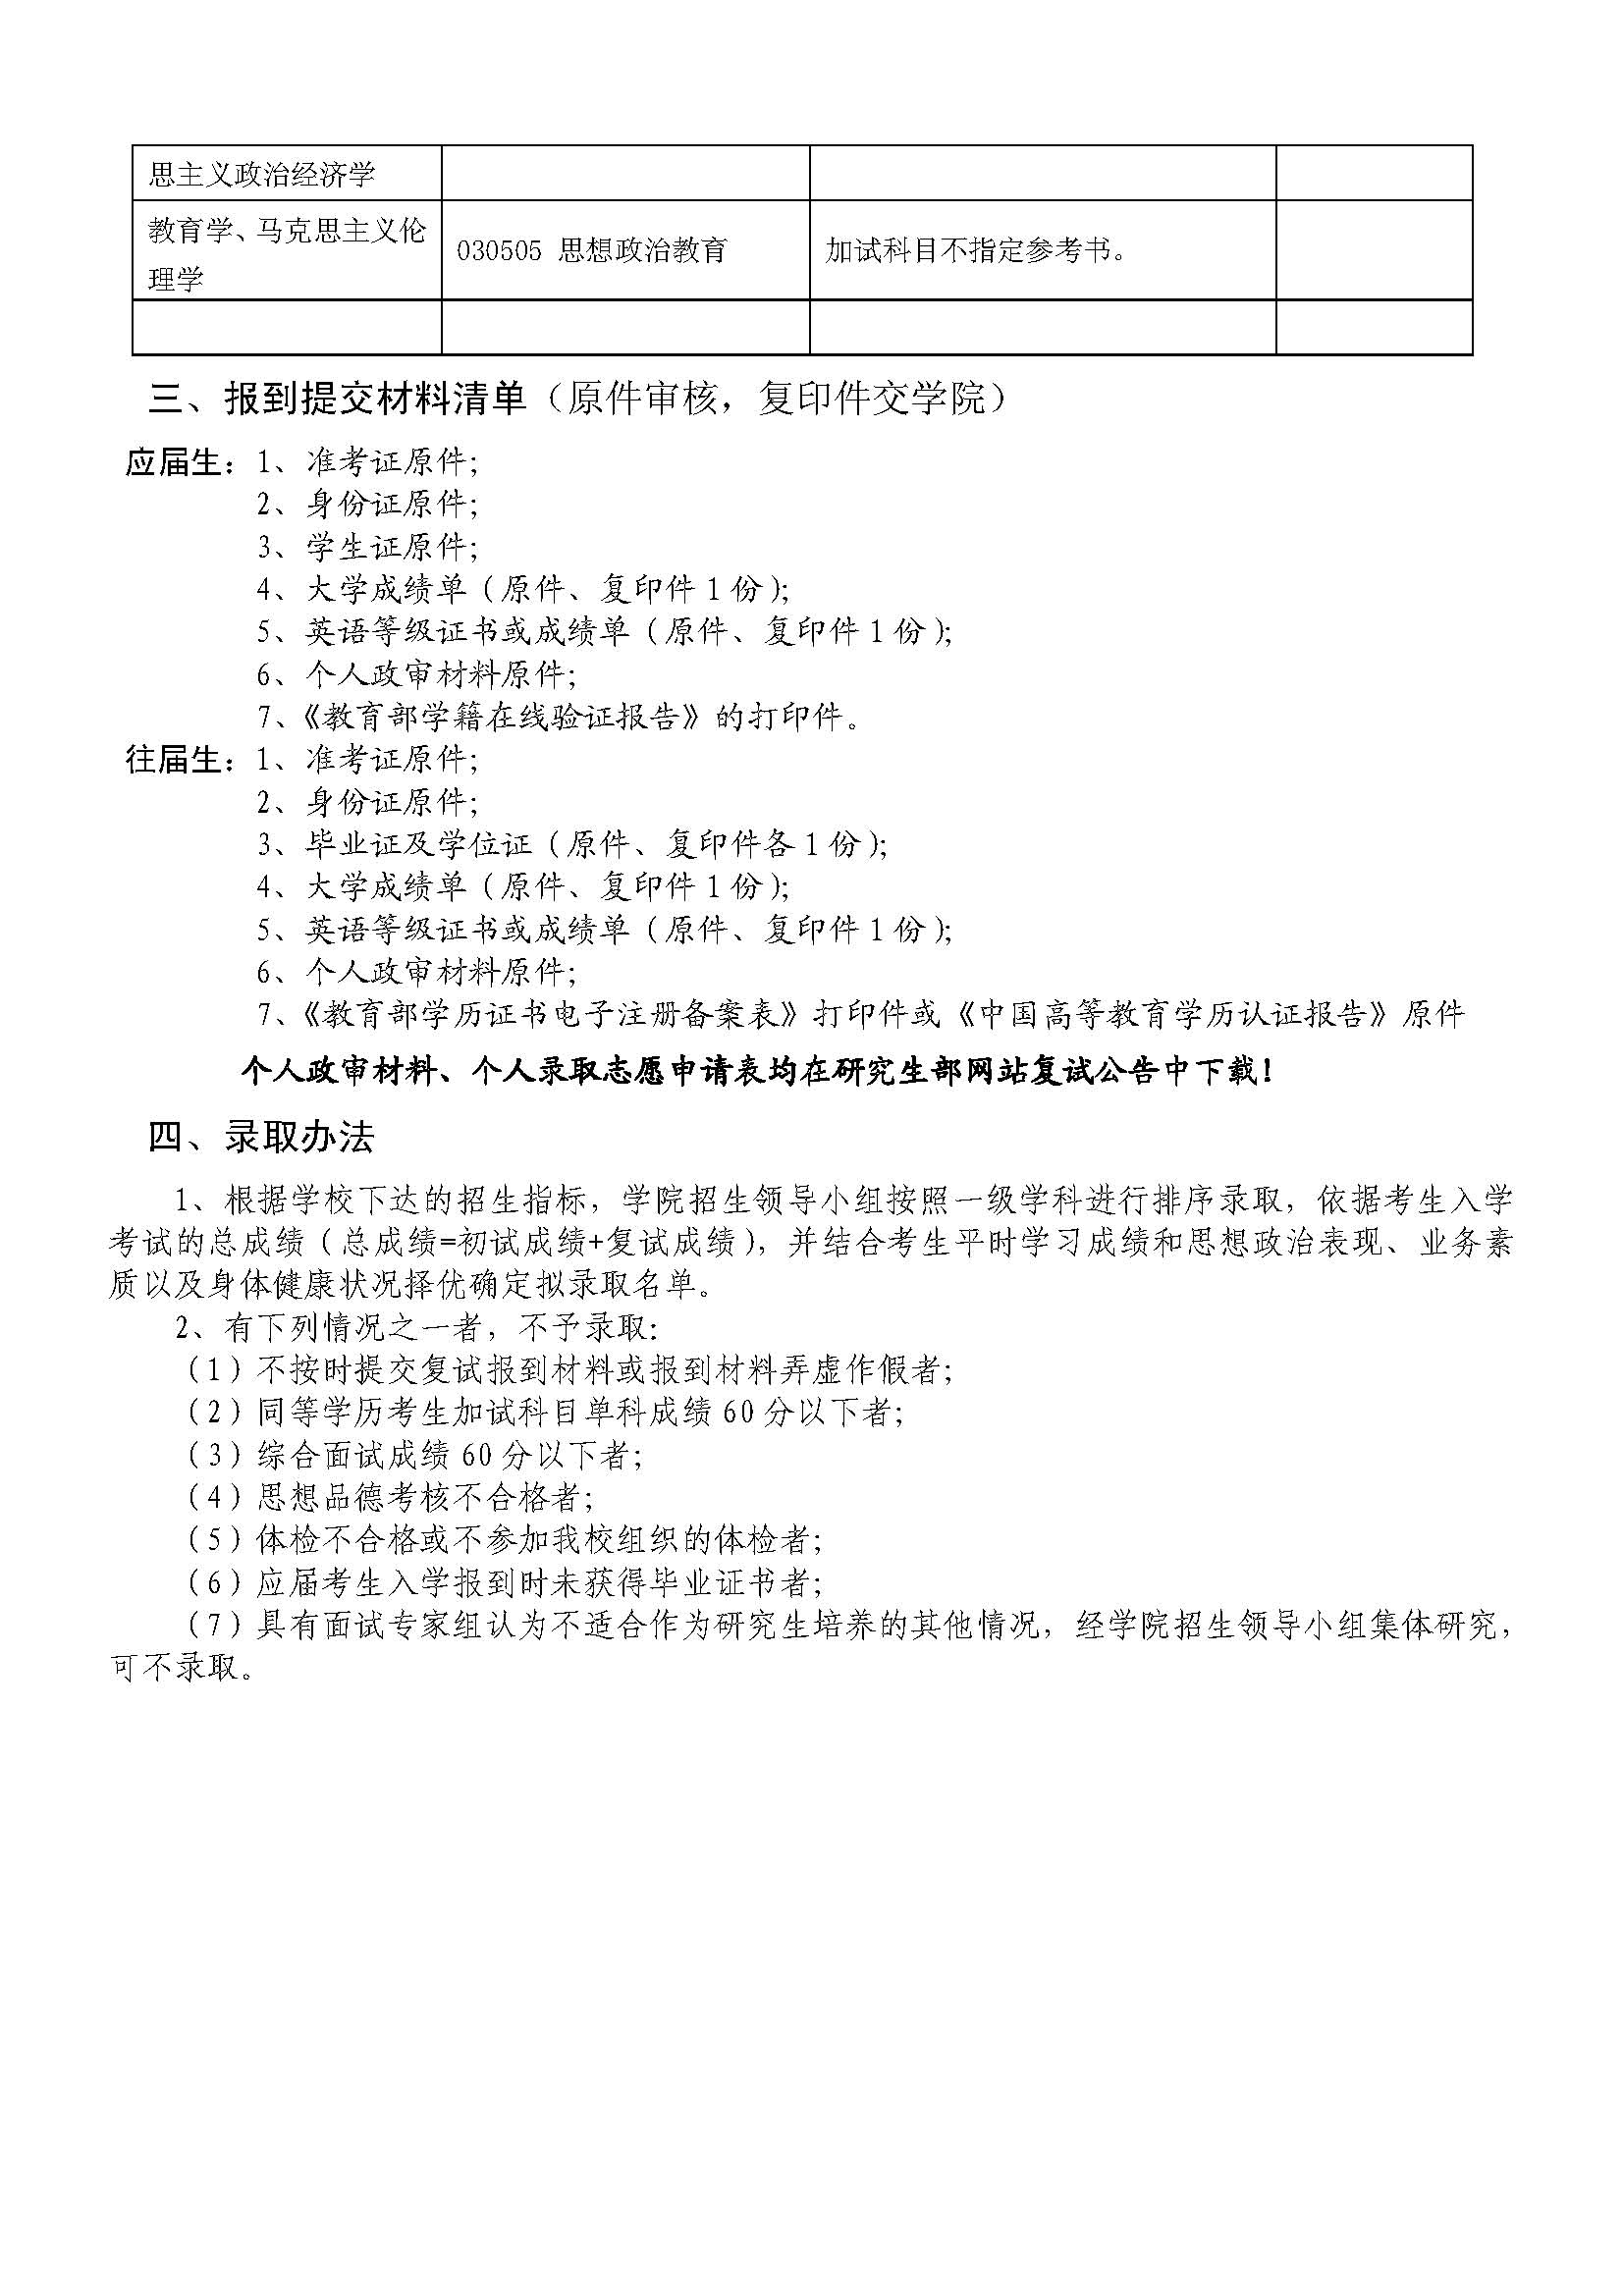 2014年南京工业大学政治教育学院考研复试安排